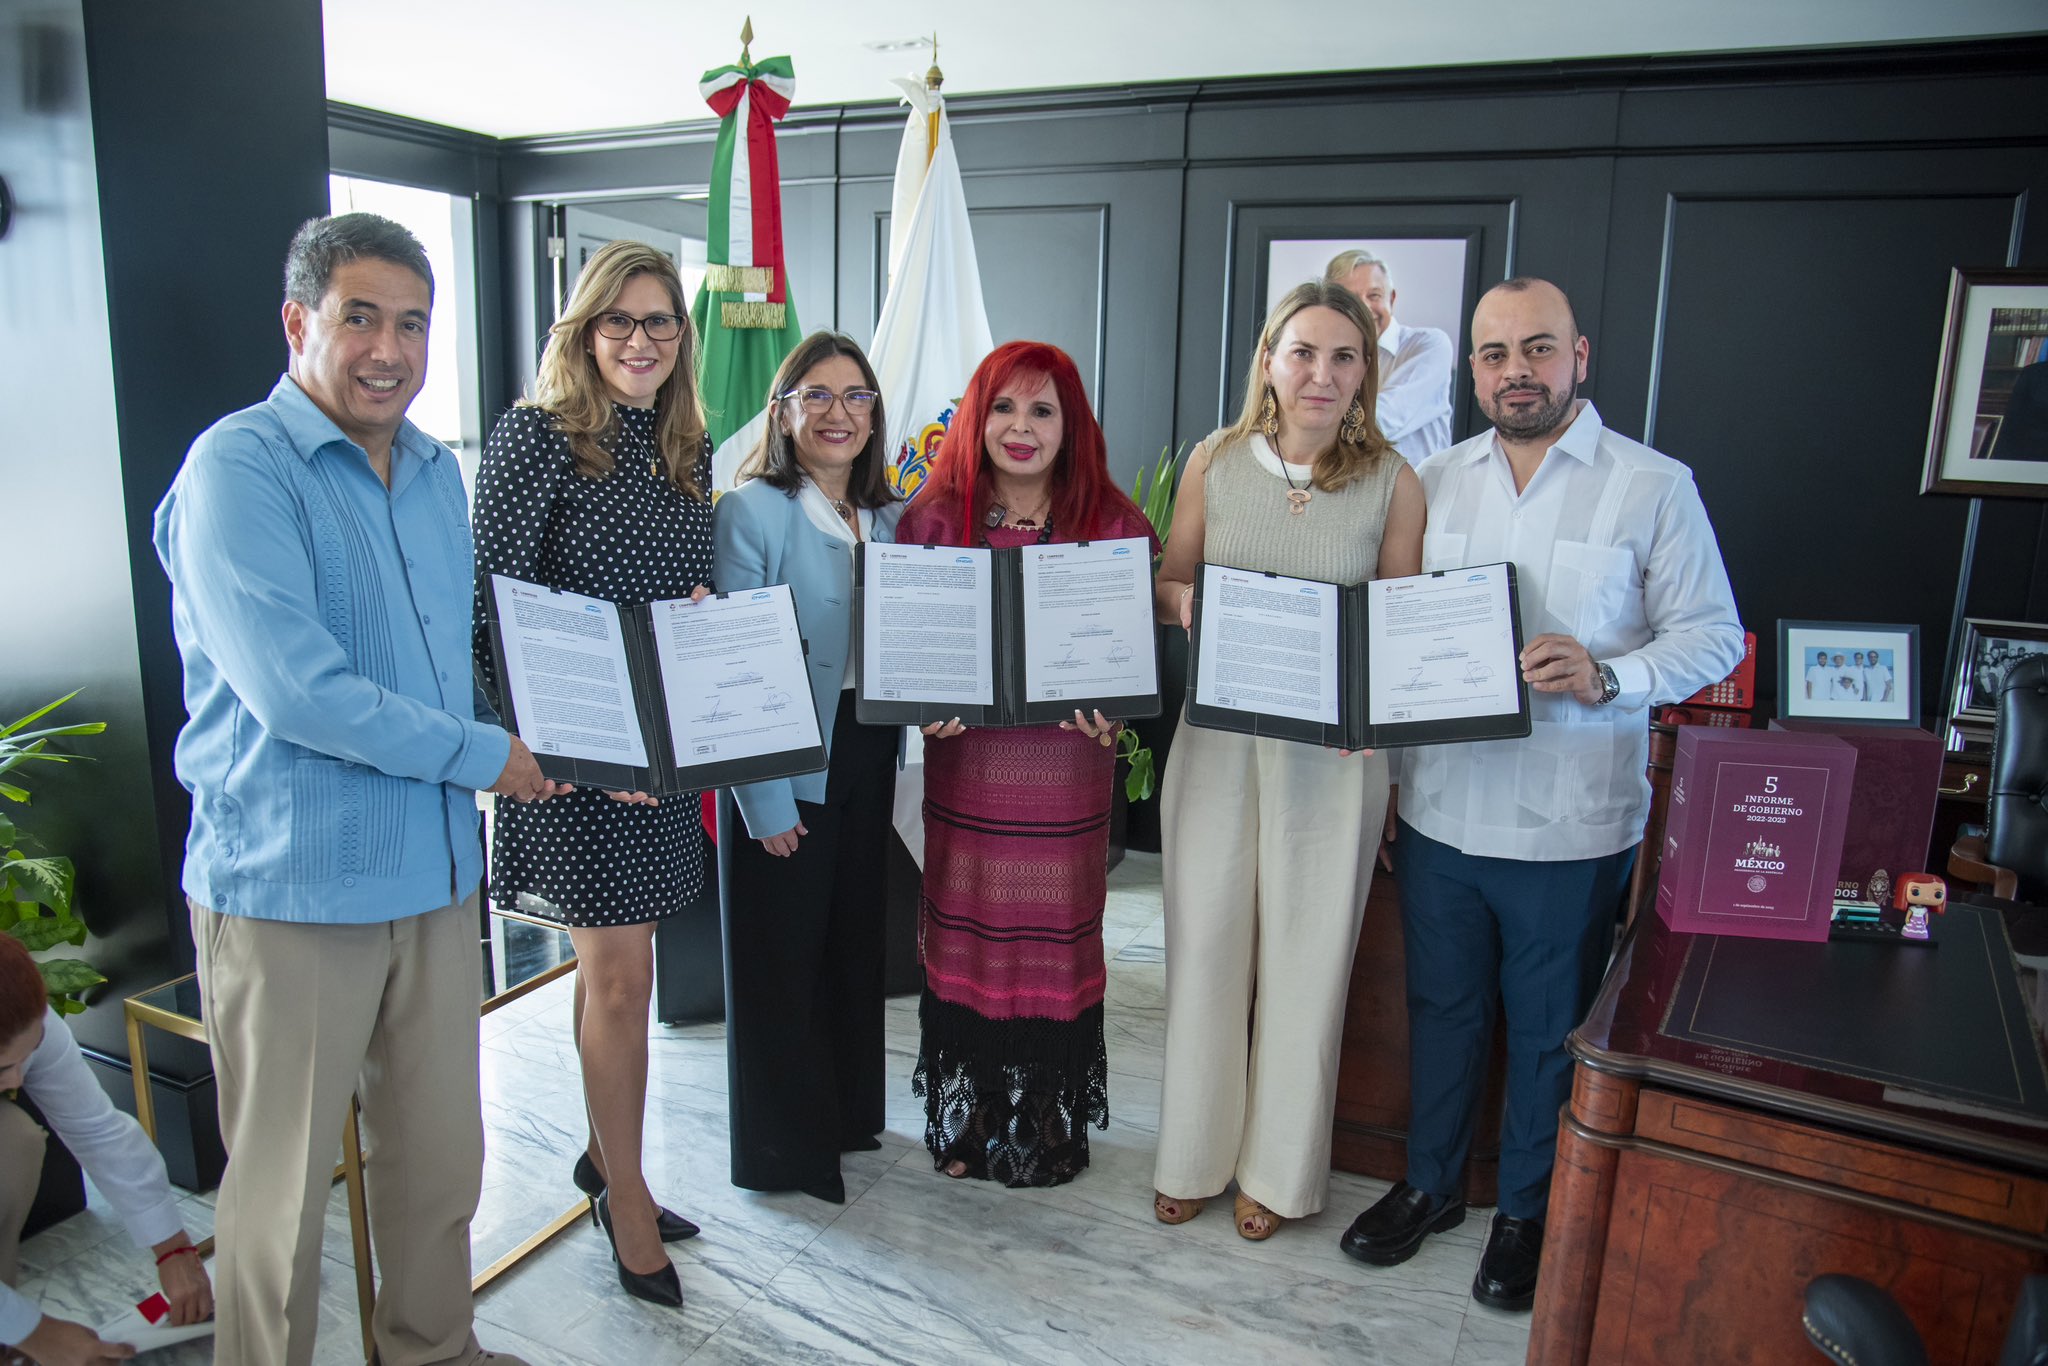 Establece Engie acuerdo de colaboración con gobierno de Campeche